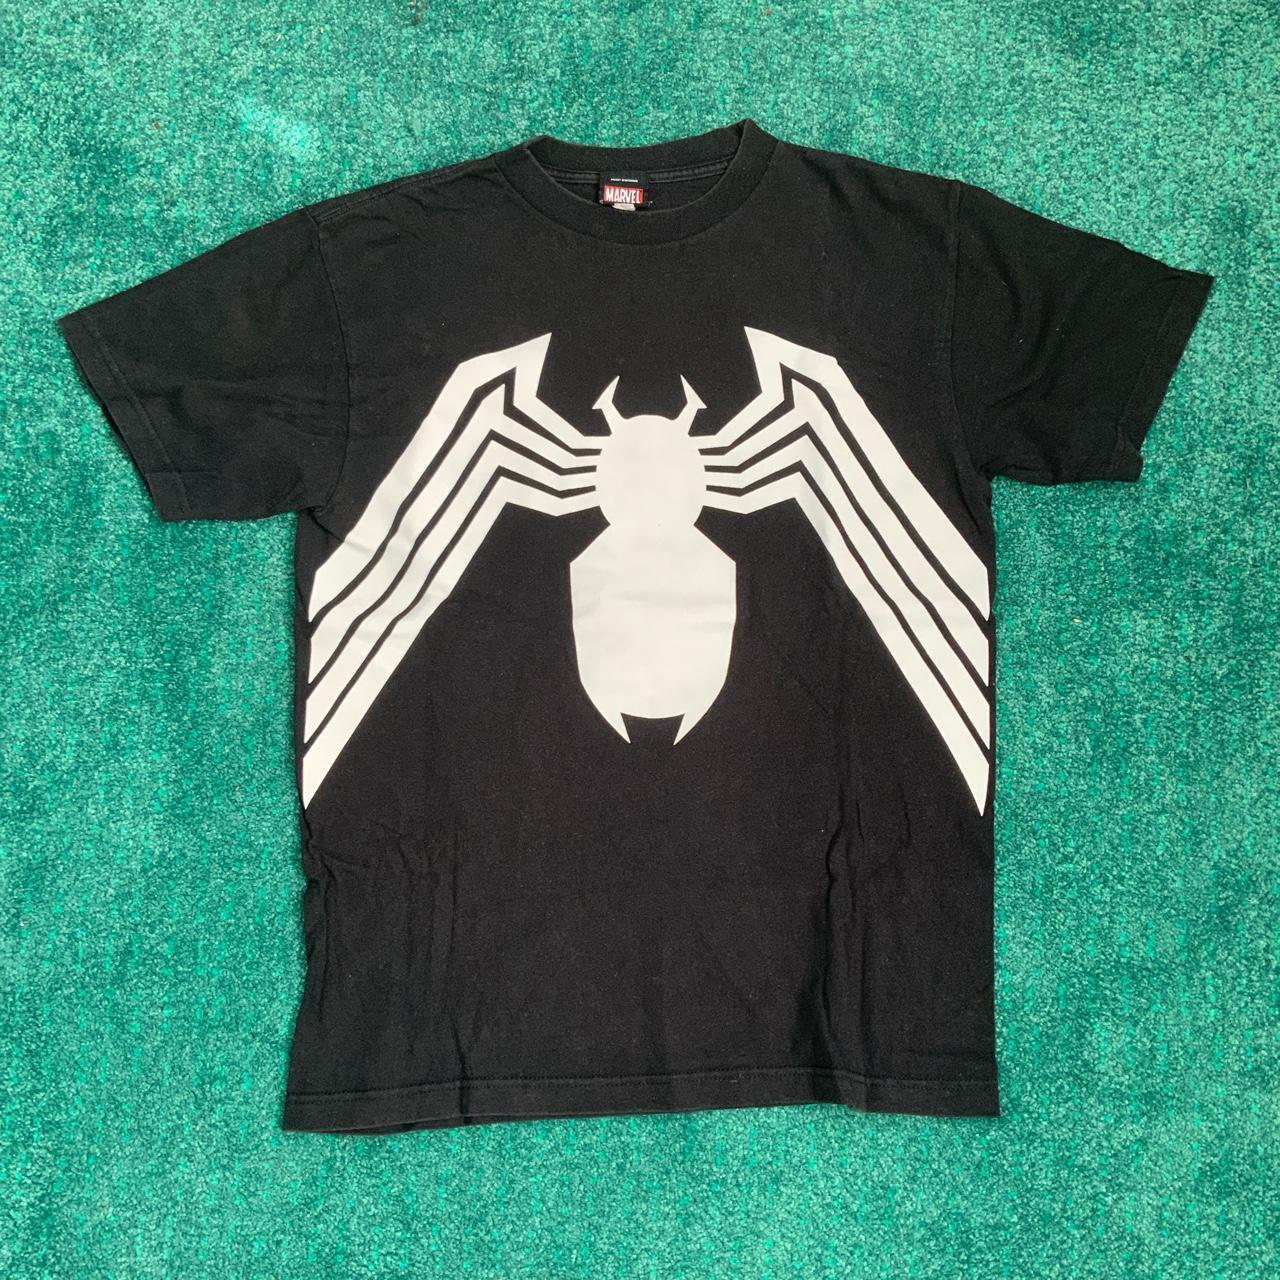 Spider-Man, Venom front - print Depop T-shirt... back and